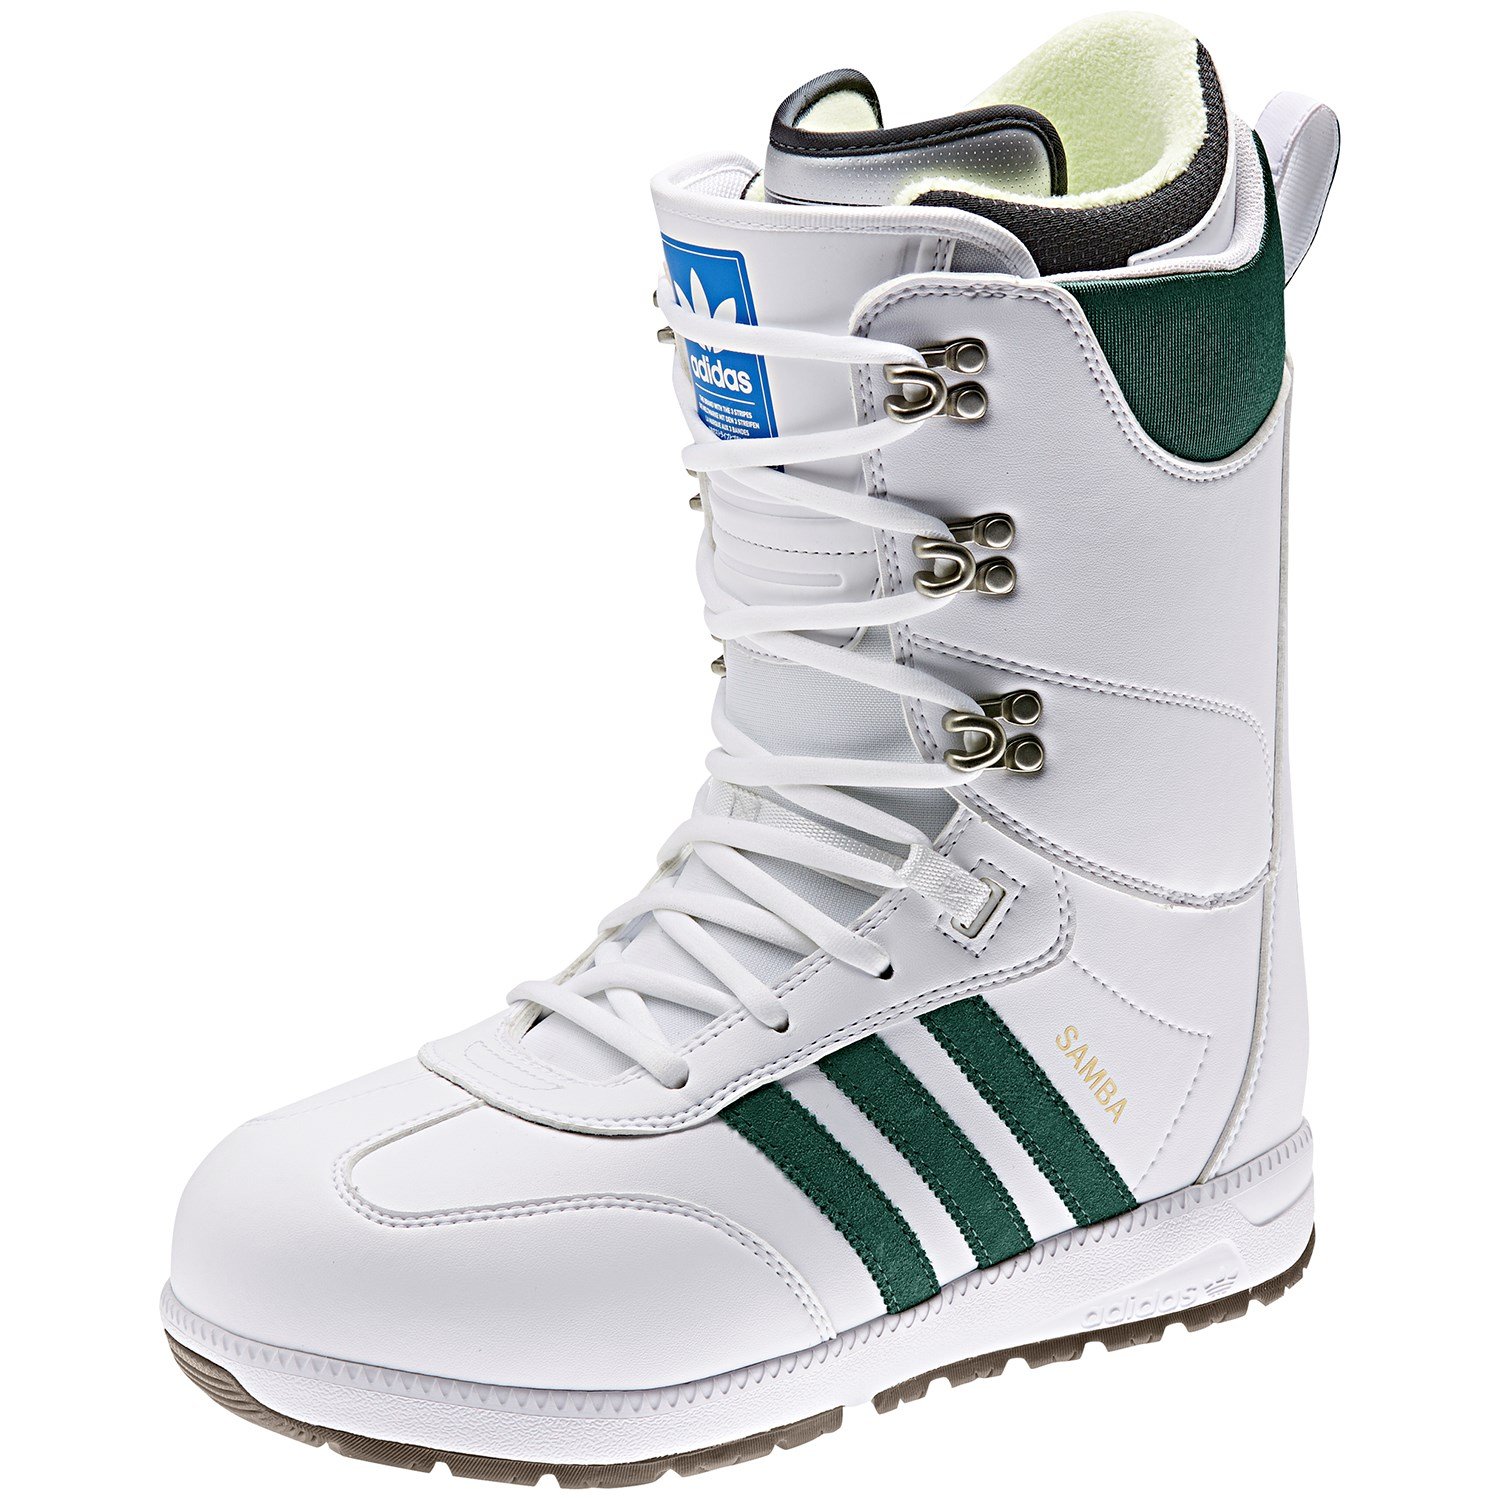 adidas samba adv snowboard boots review